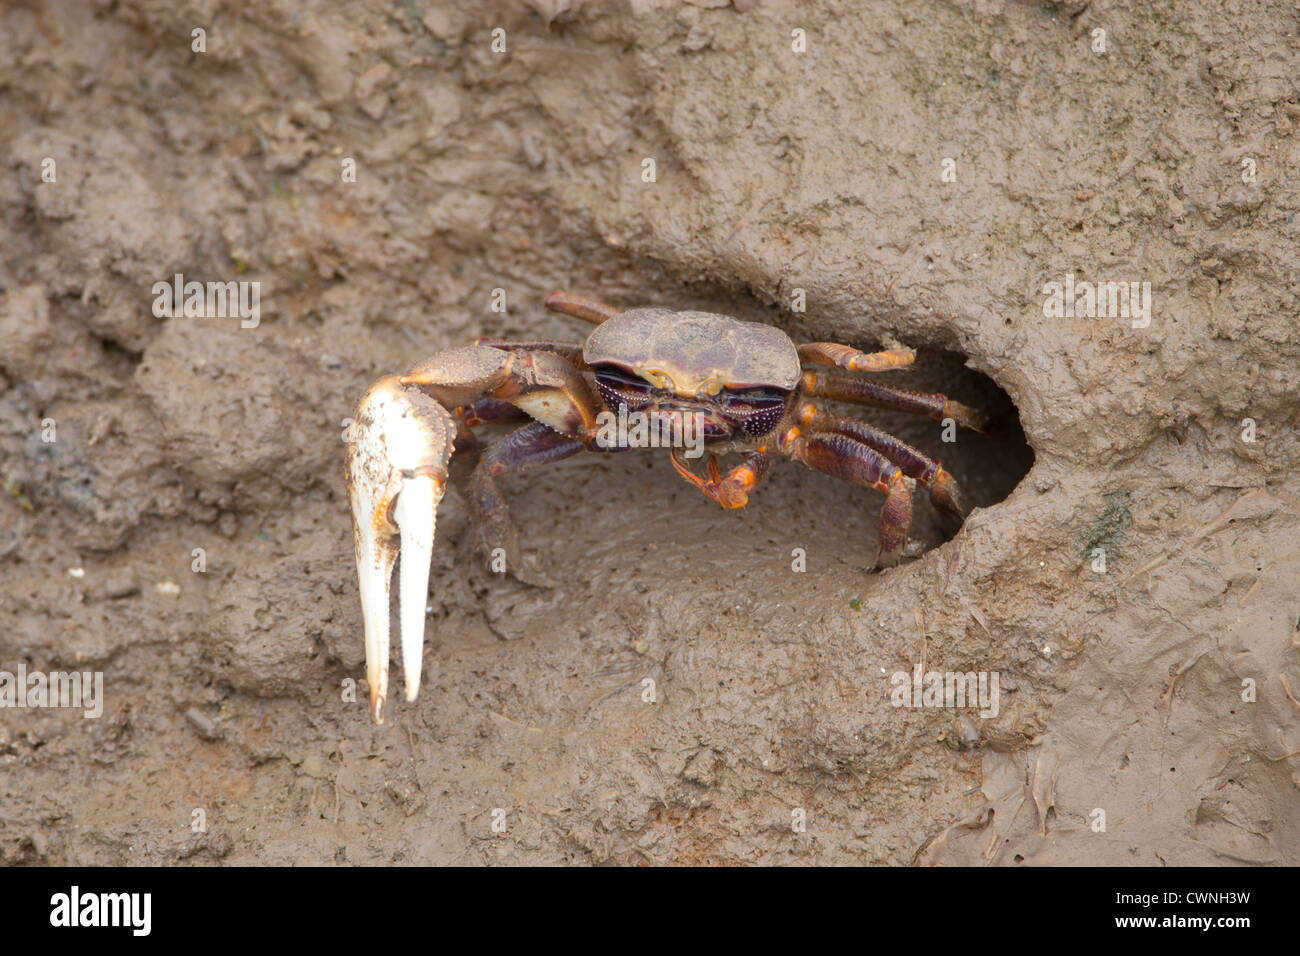 L'Uca pugnax - crabe violoniste communiquer en l'agitant d''s claw au sortir de son terrier à marée basse Banque D'Images